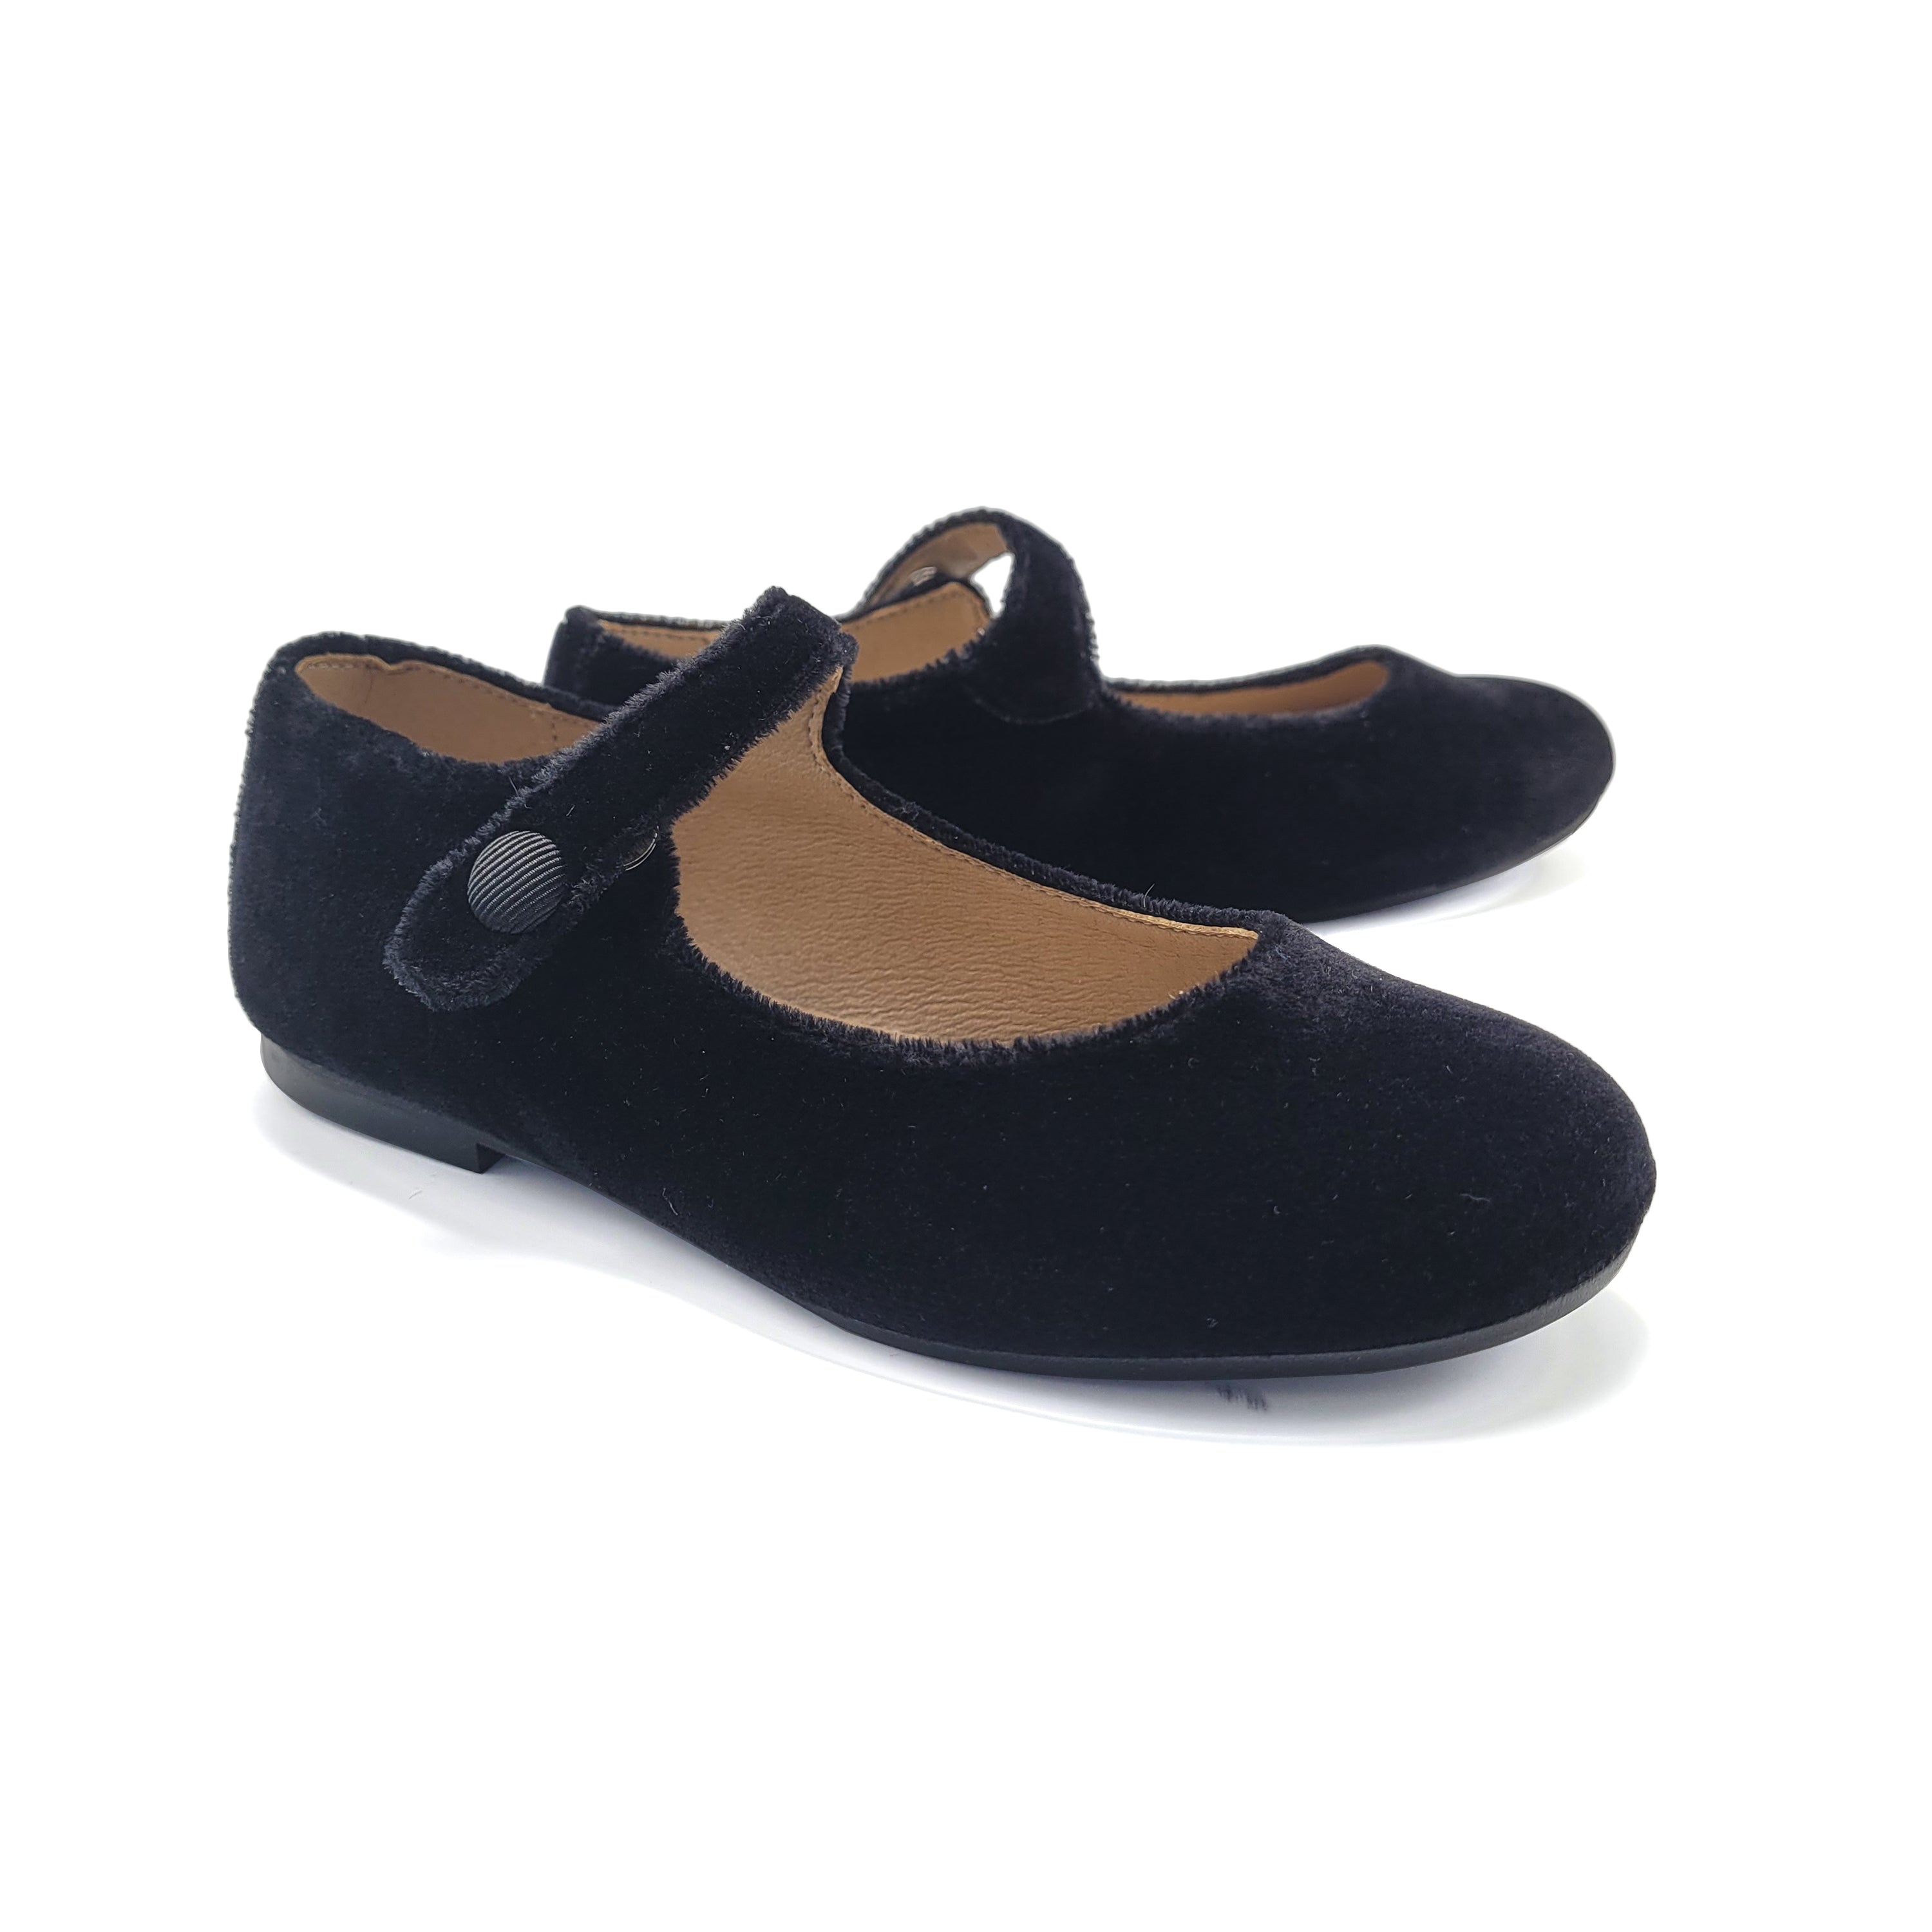 Maria Catalan Black Velvet Mary Jane 700706 – Laced Shoe Inc